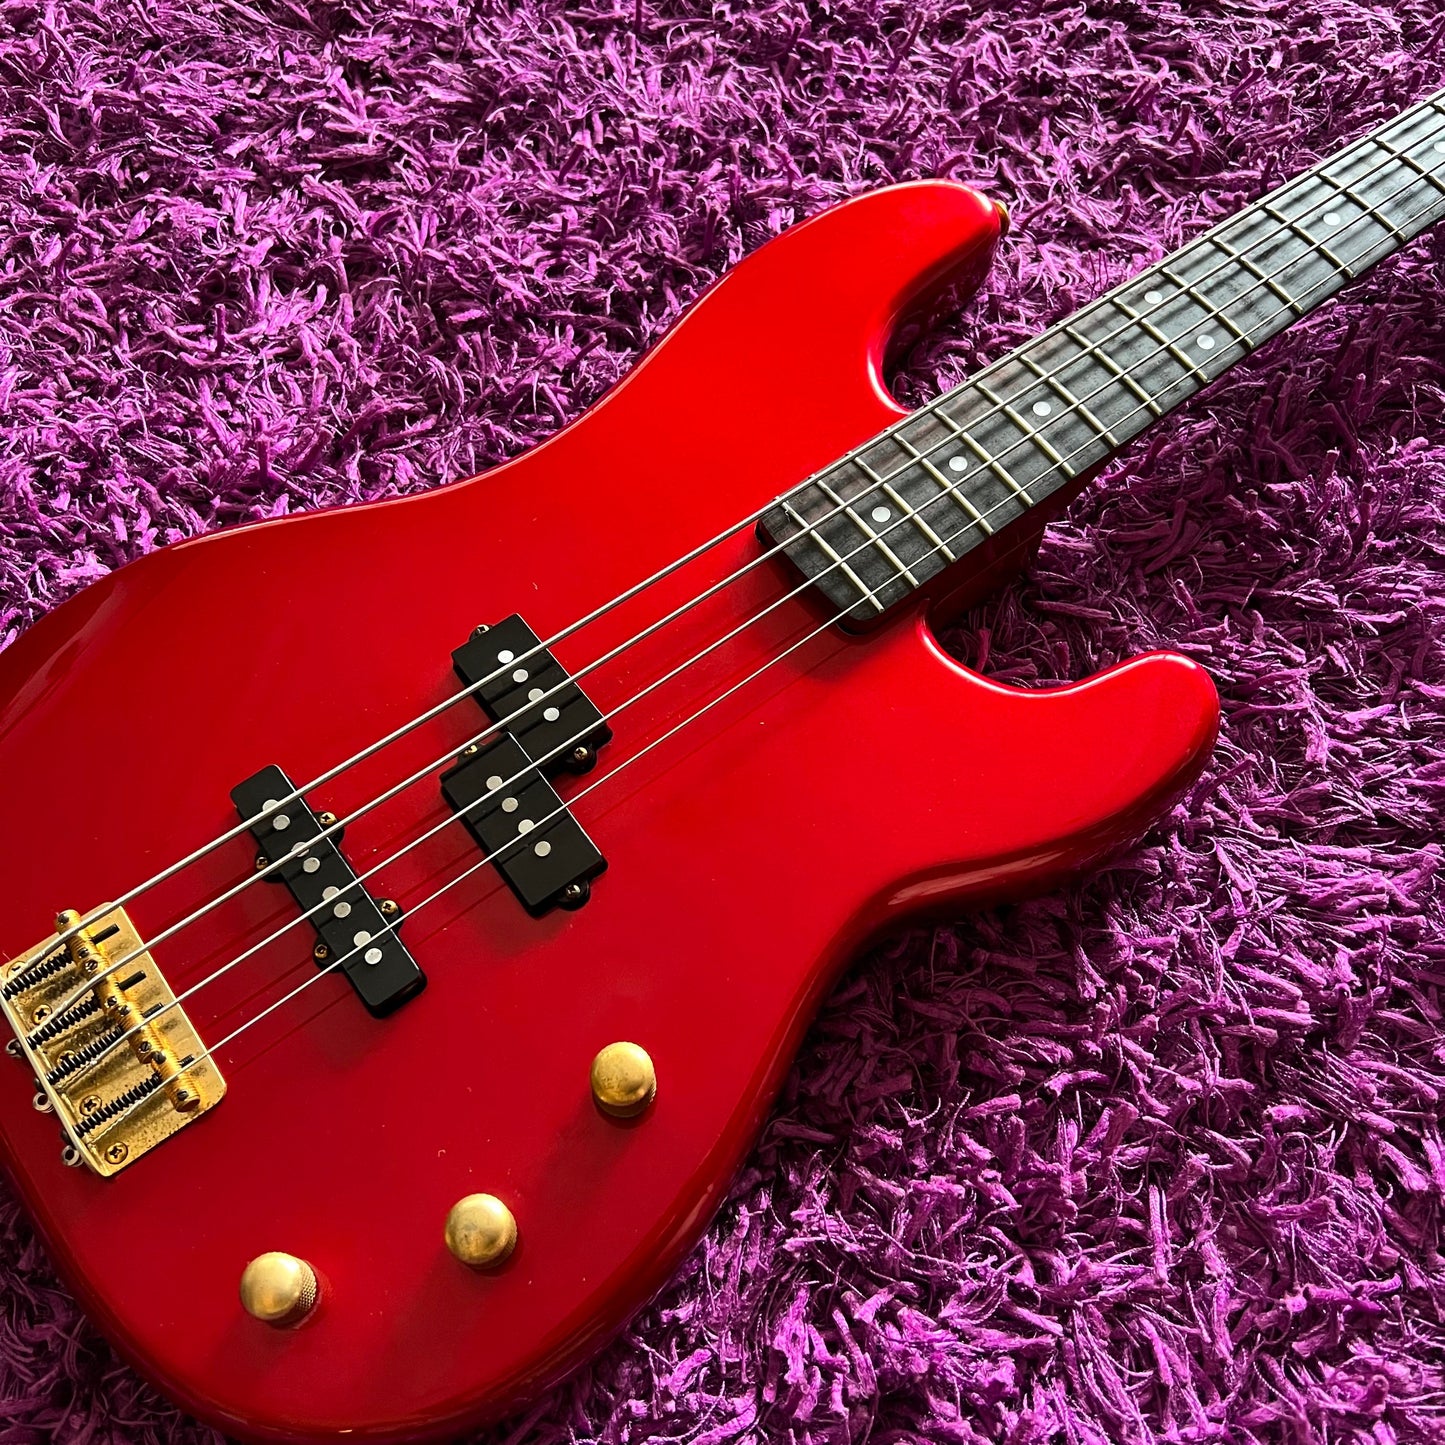 Tokai Hard Puncher PJ-55 Precision Bass 1980s Gold Hardware